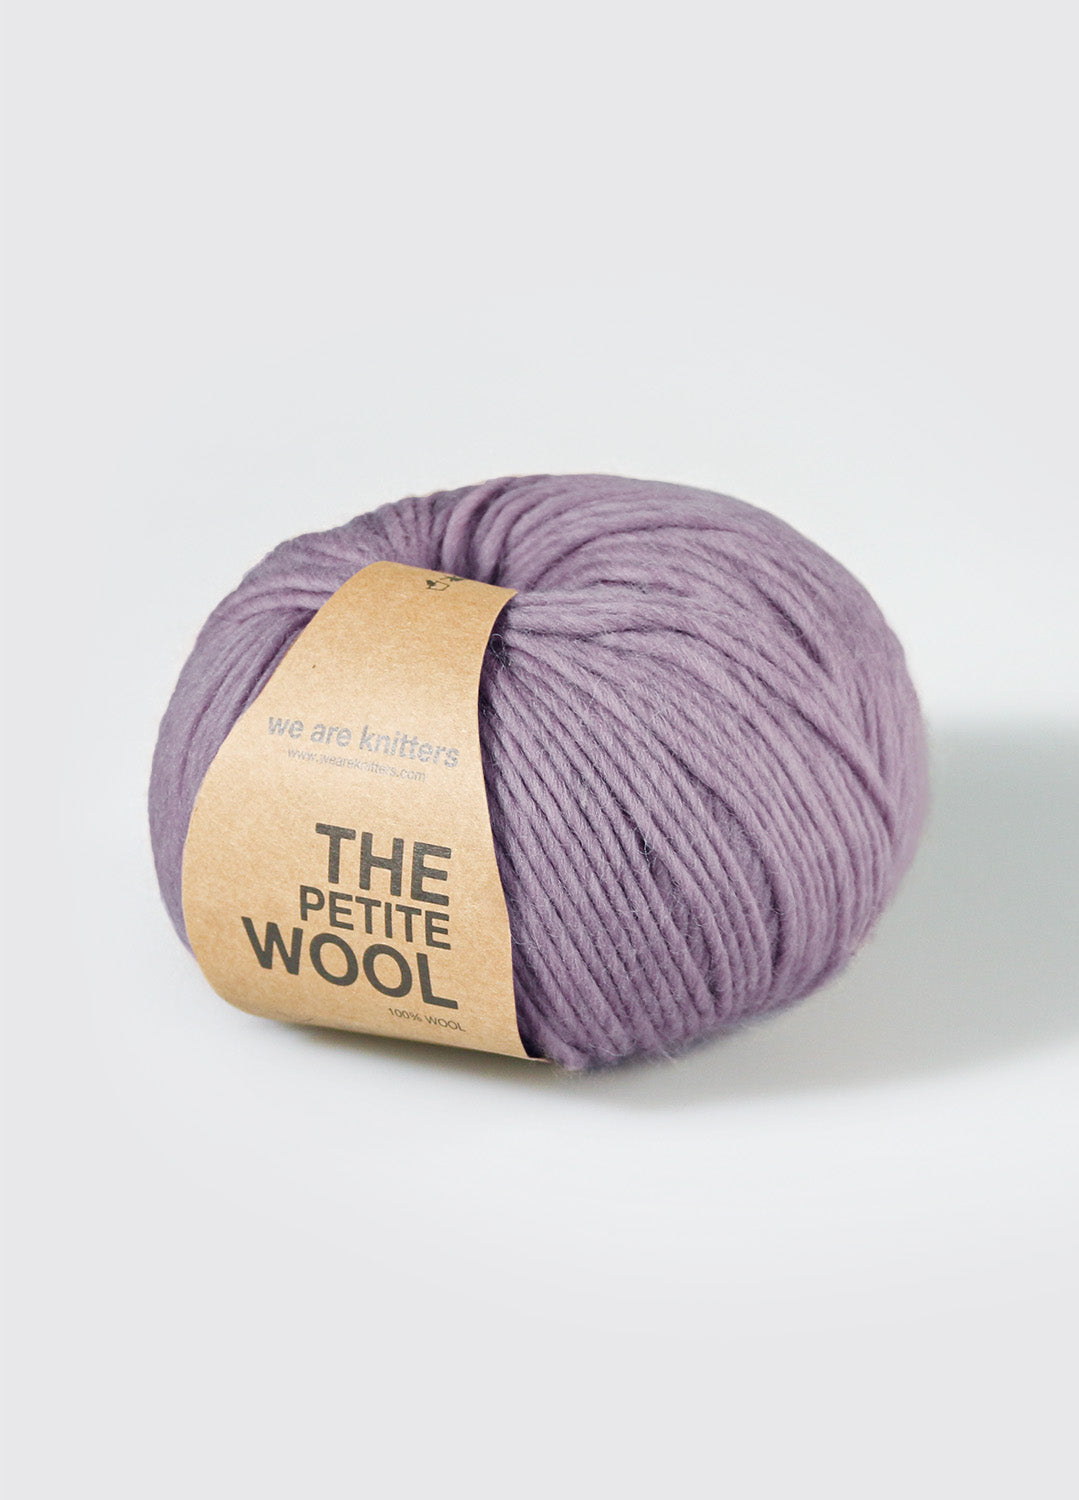 Petite Wool Digital Lavender